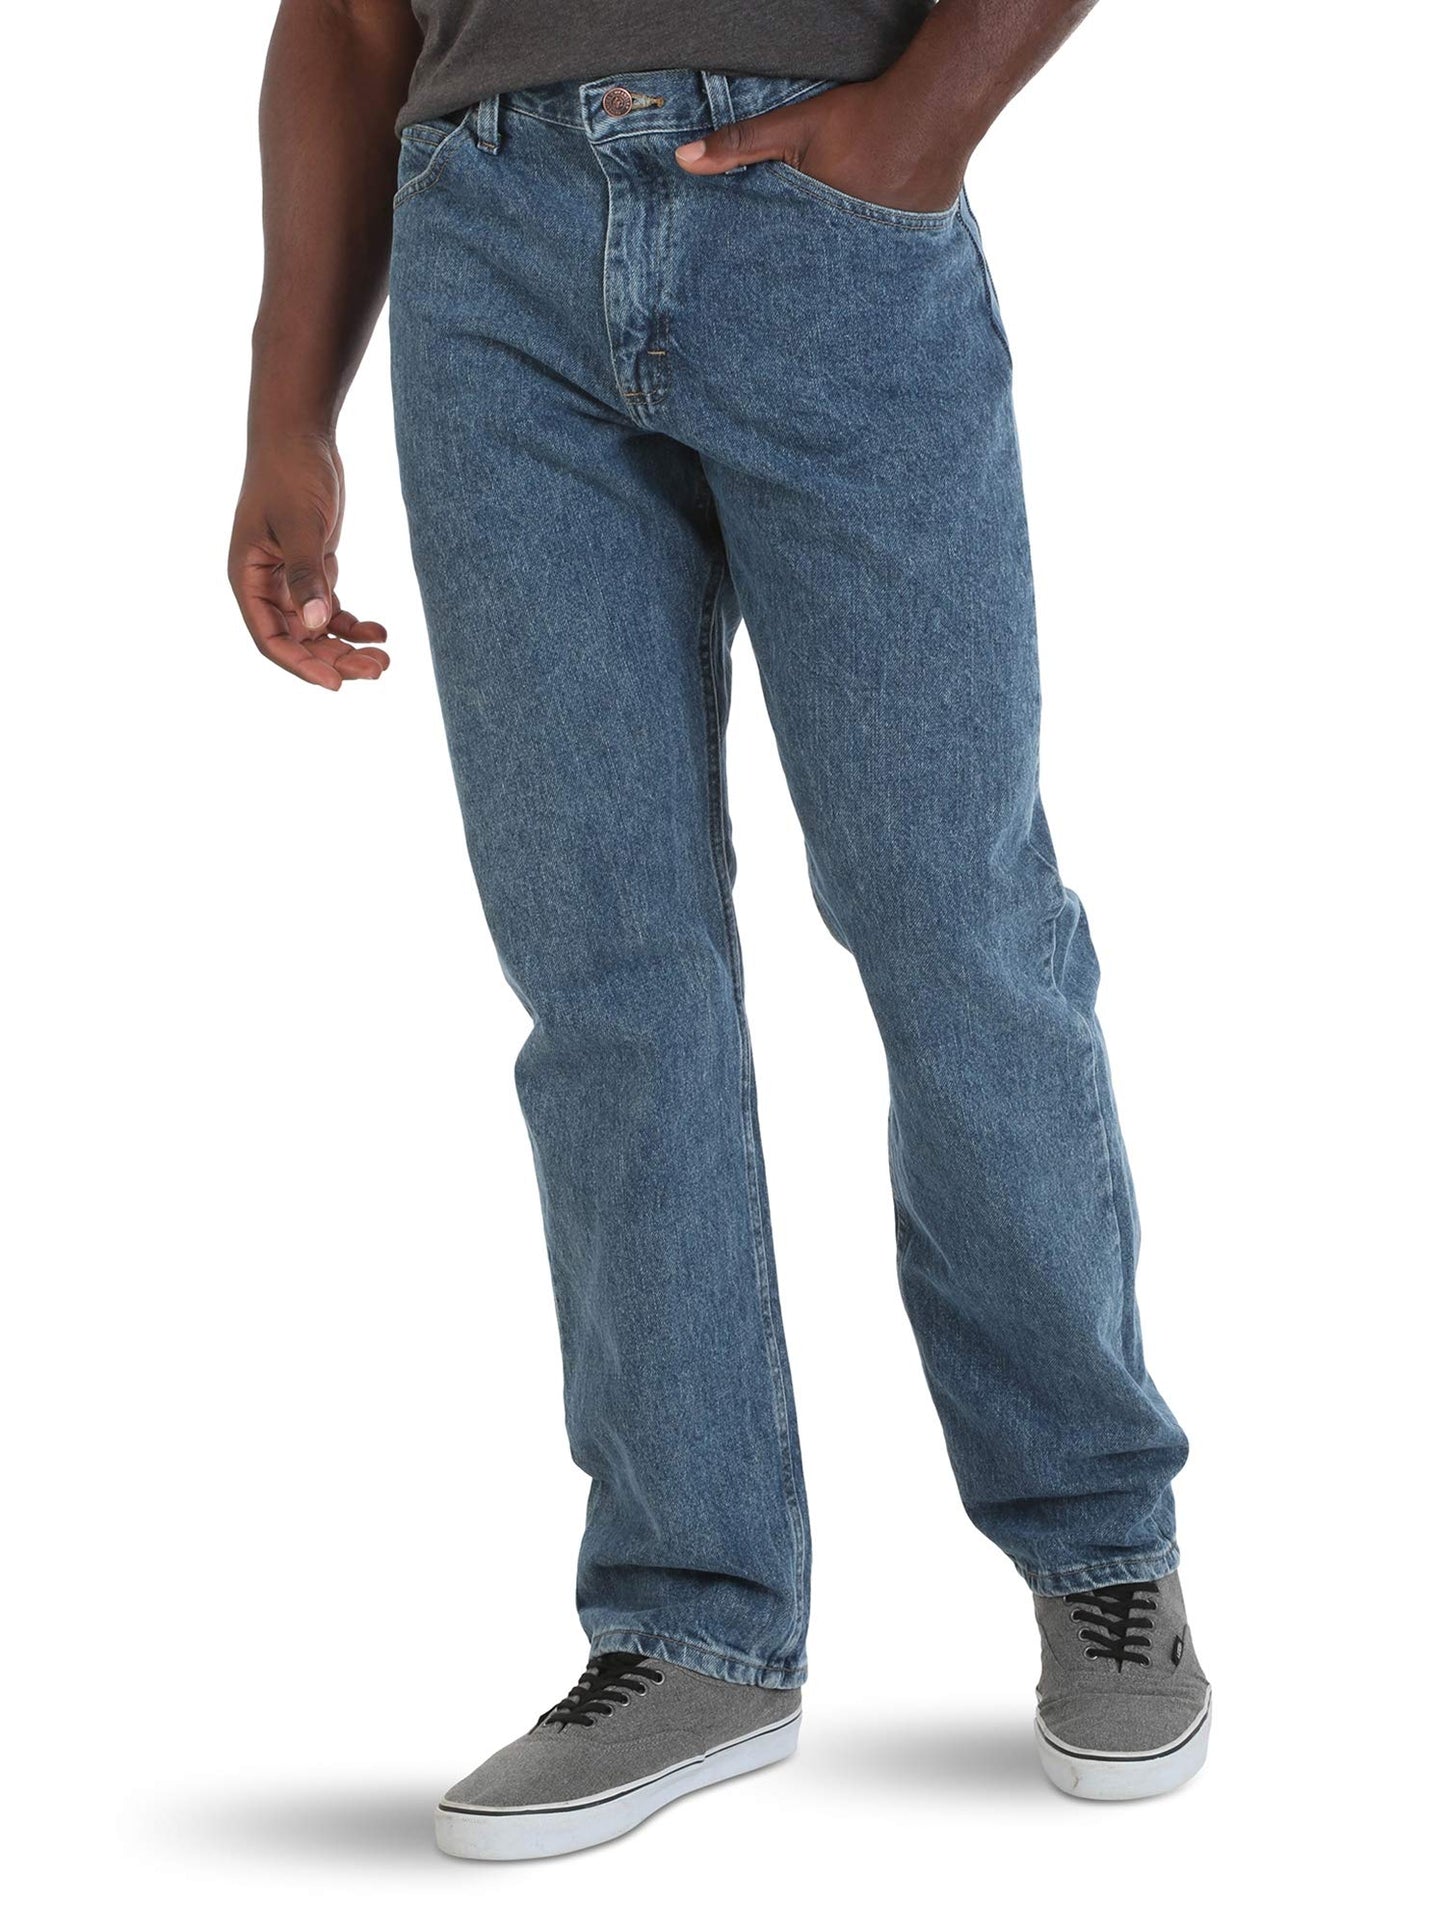 Wrangler Authentics Men's Classic 5-Pocket Relaxed Fit Cotton Jean, Vintage Stonewash, 38W x 32L